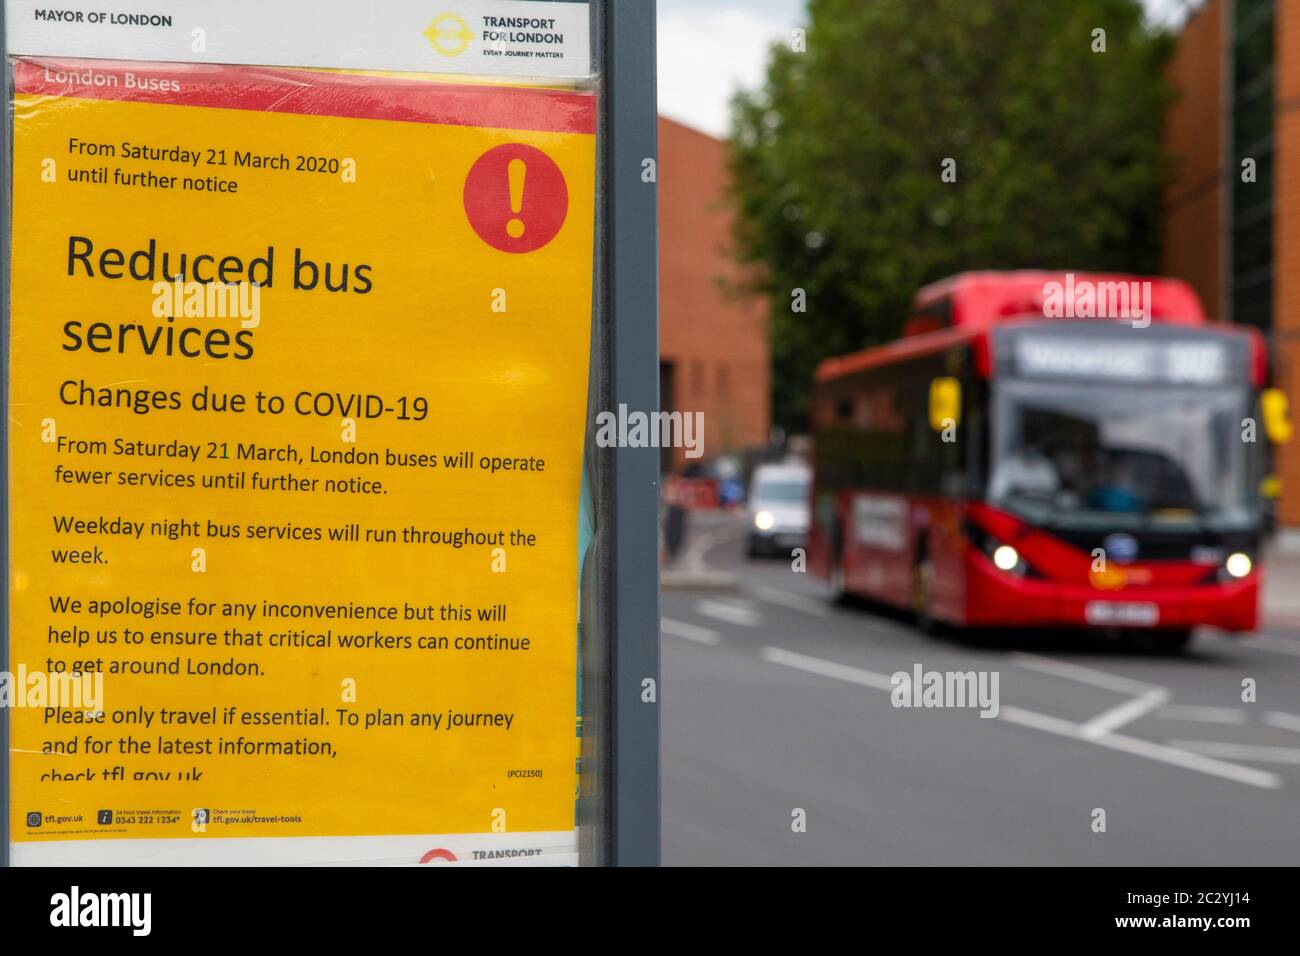 Londres, Reino Unido - 17 de junio de 2020: Un cartel en una parada de autobús en el sur de Londres, Reino Unido, detallando los servicios de autobús reducidos en Londres durante la pandemia del Coronavirus. Foto de stock